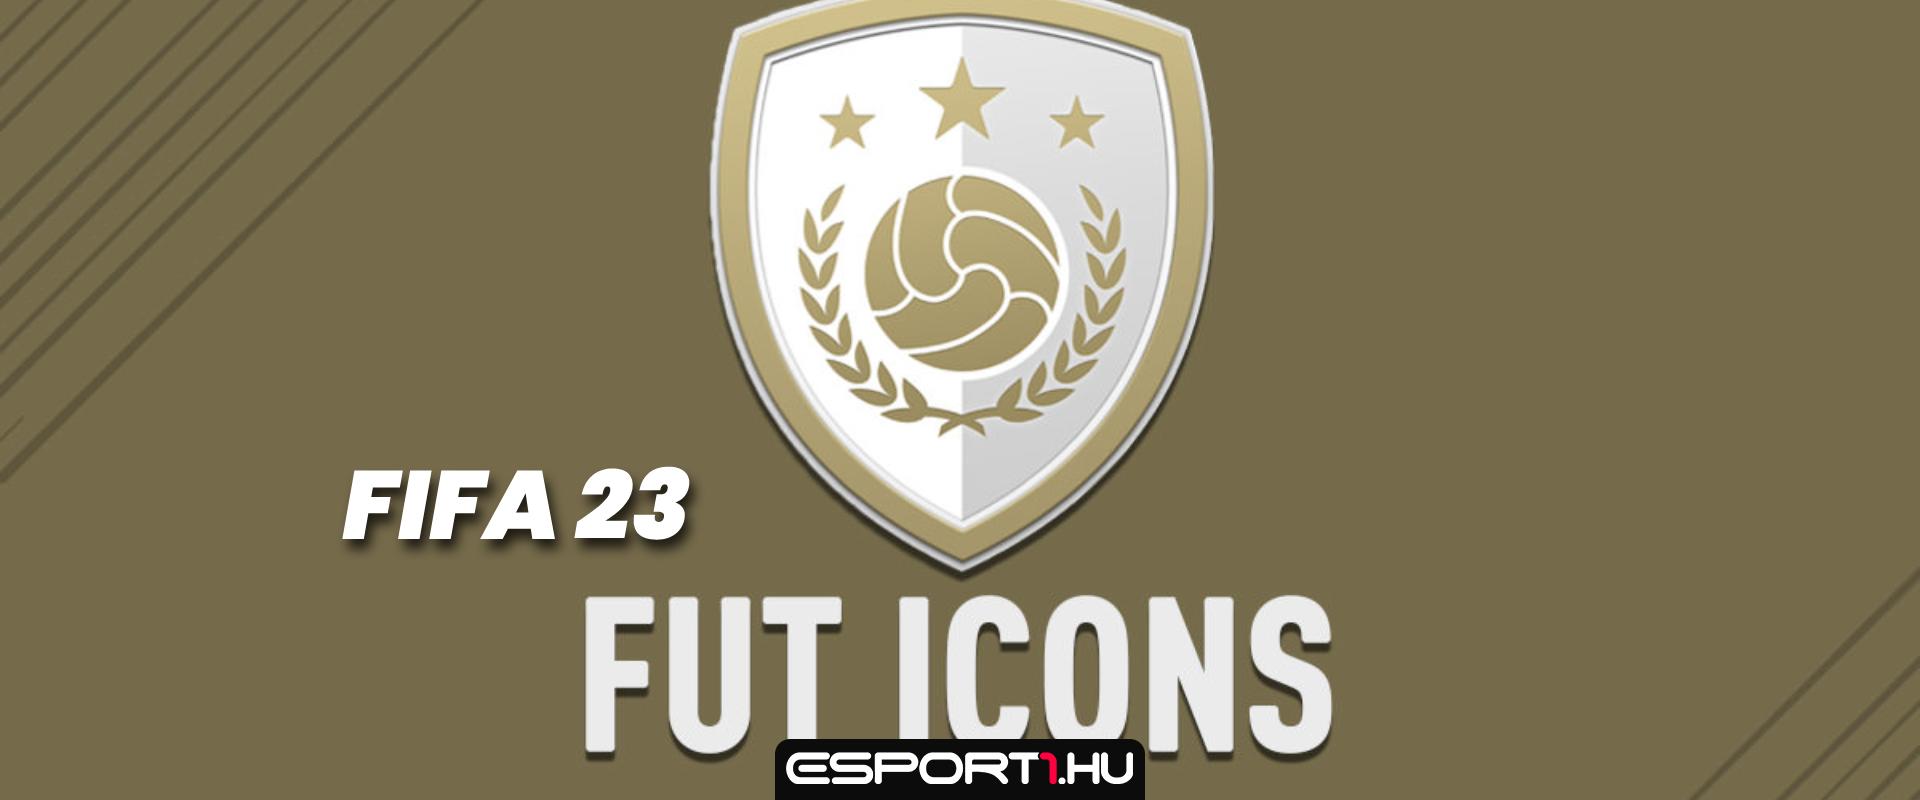 Új taggal bővül az ICON-kártyák tábora a FIFA 23-ban